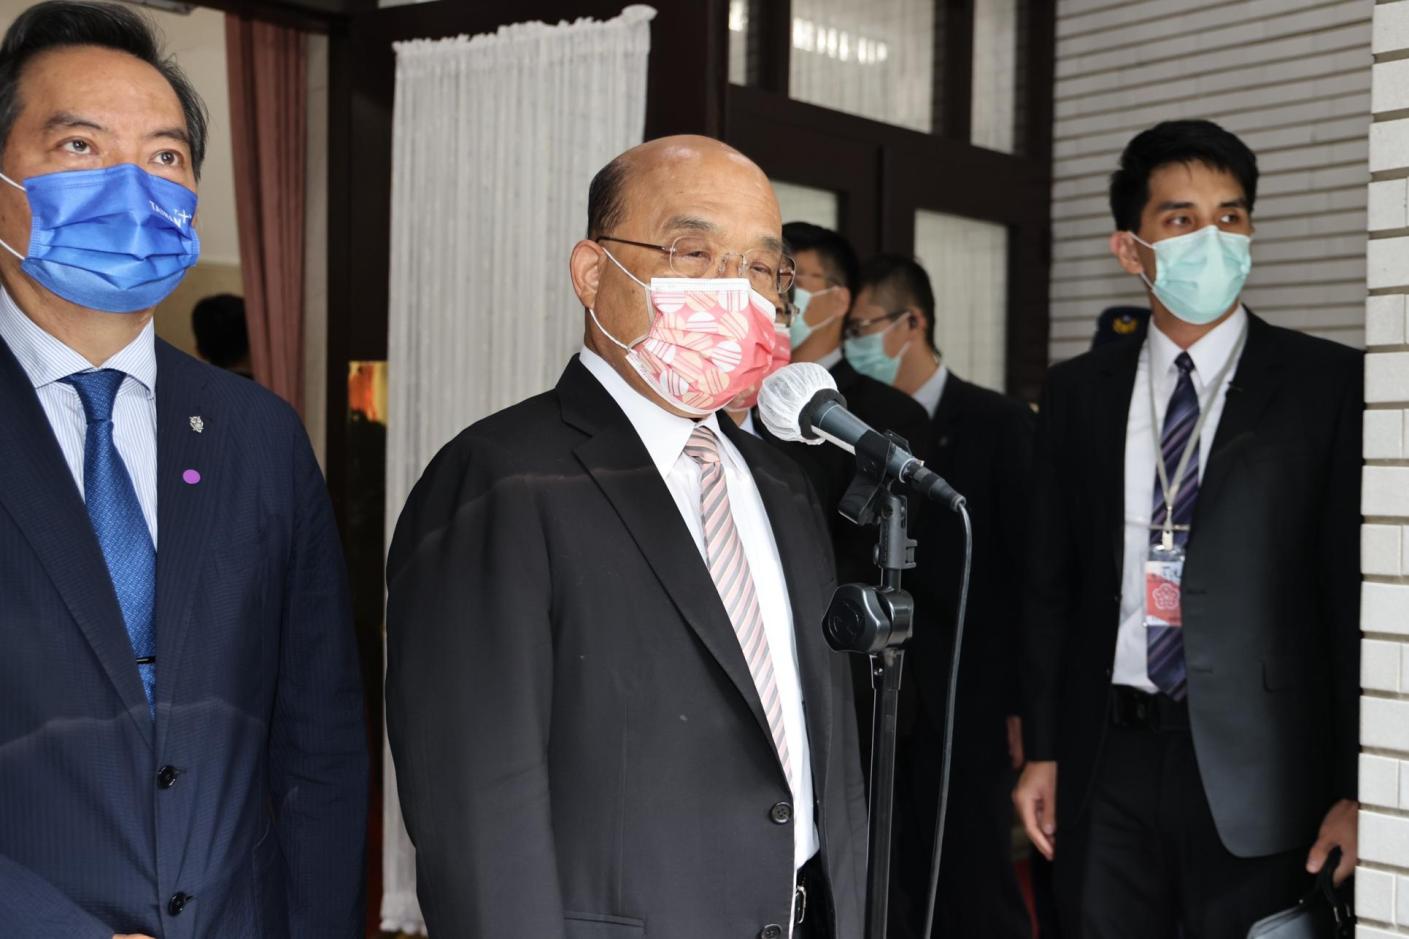 行政院長蘇貞昌30日針對被指涉入鏡電視案提出說明。林啟弘攝